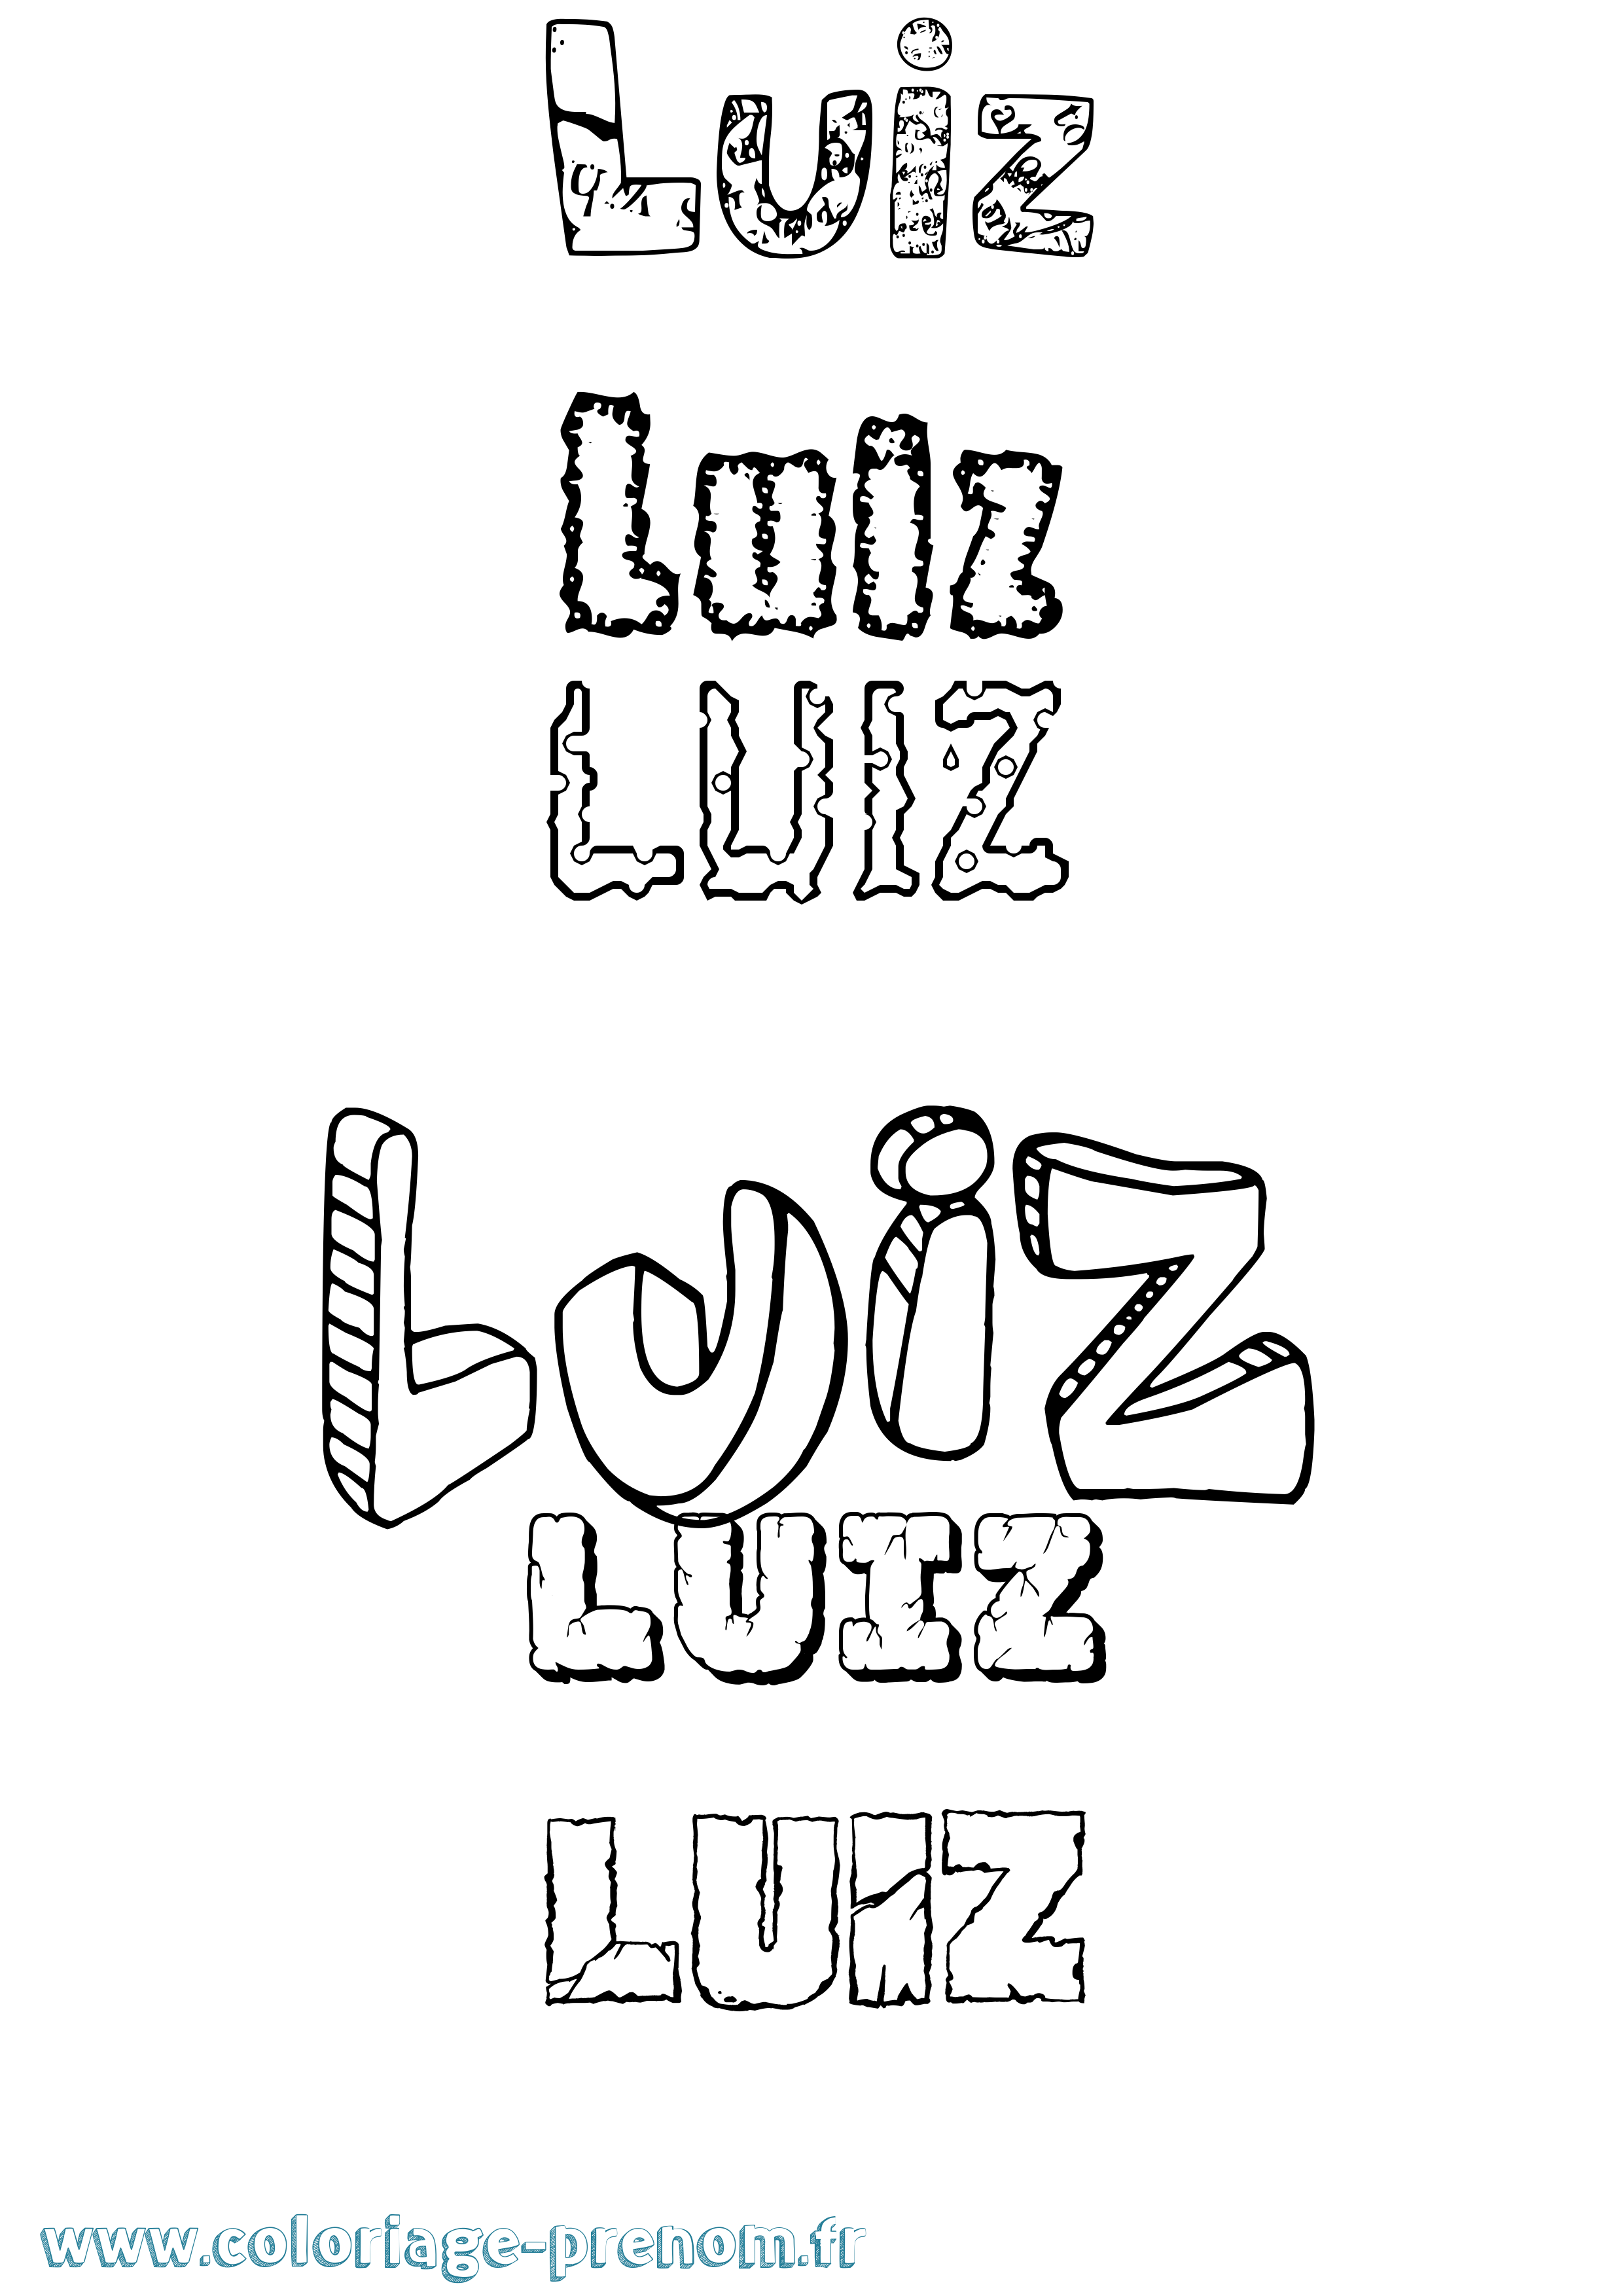 Coloriage prénom Luiz Destructuré